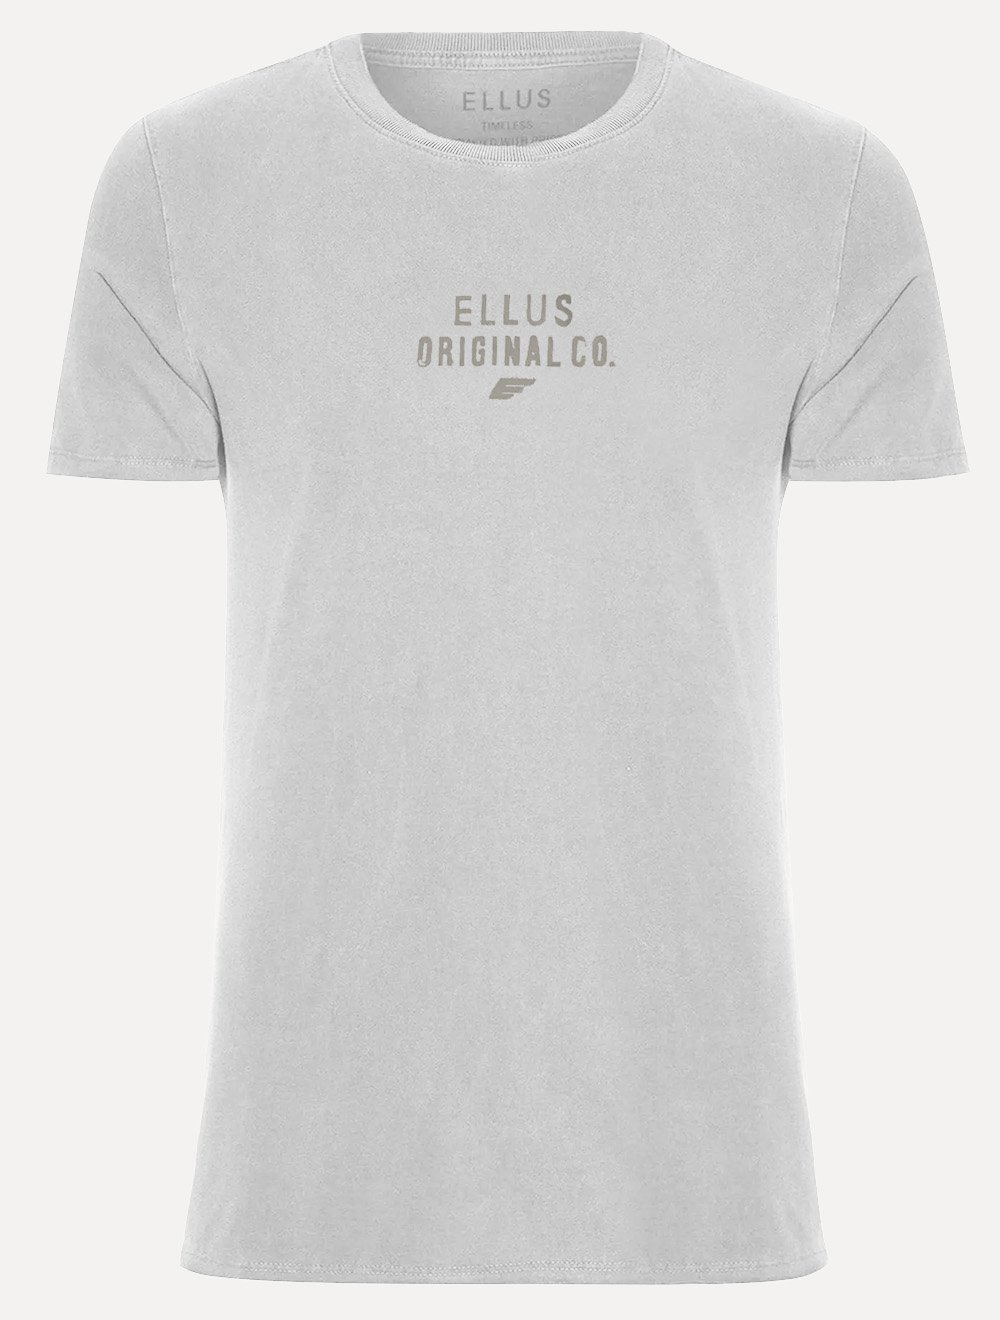 Camiseta Ellus Cotton Fine Washed Originals Cinza